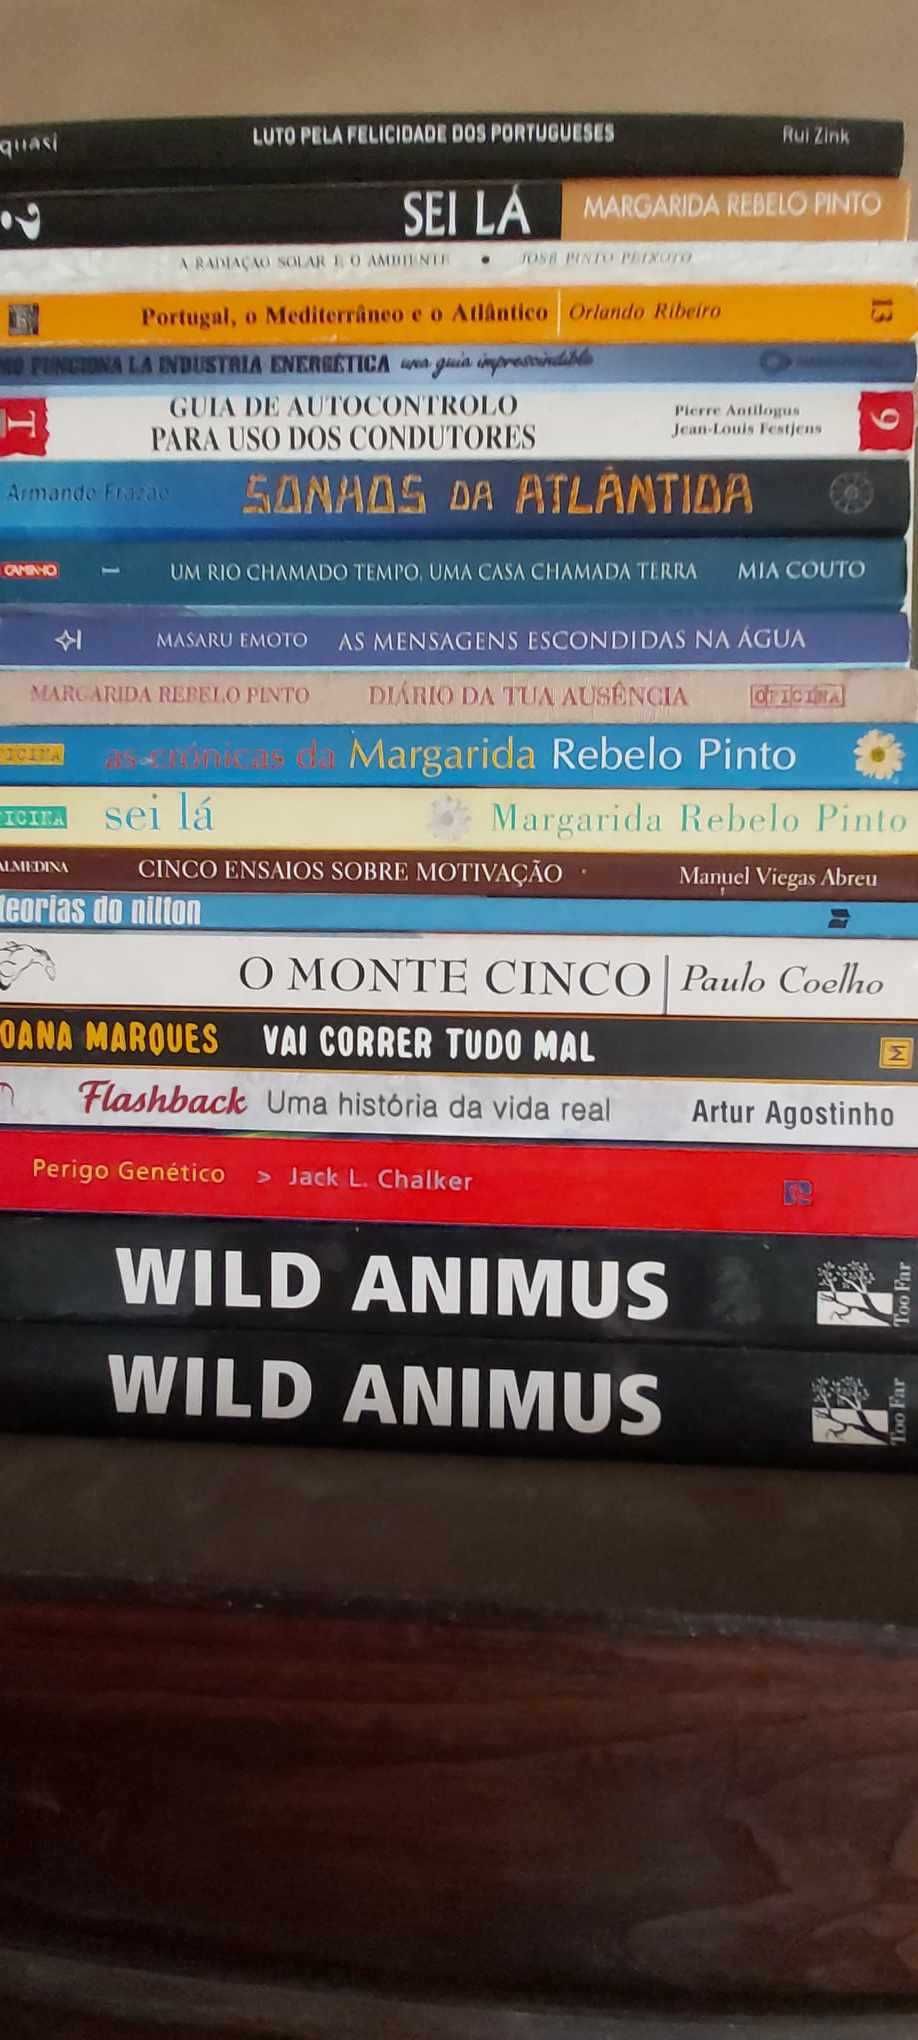 Livro "O MONTE CINCO" de Paulo Coelho (Novo)